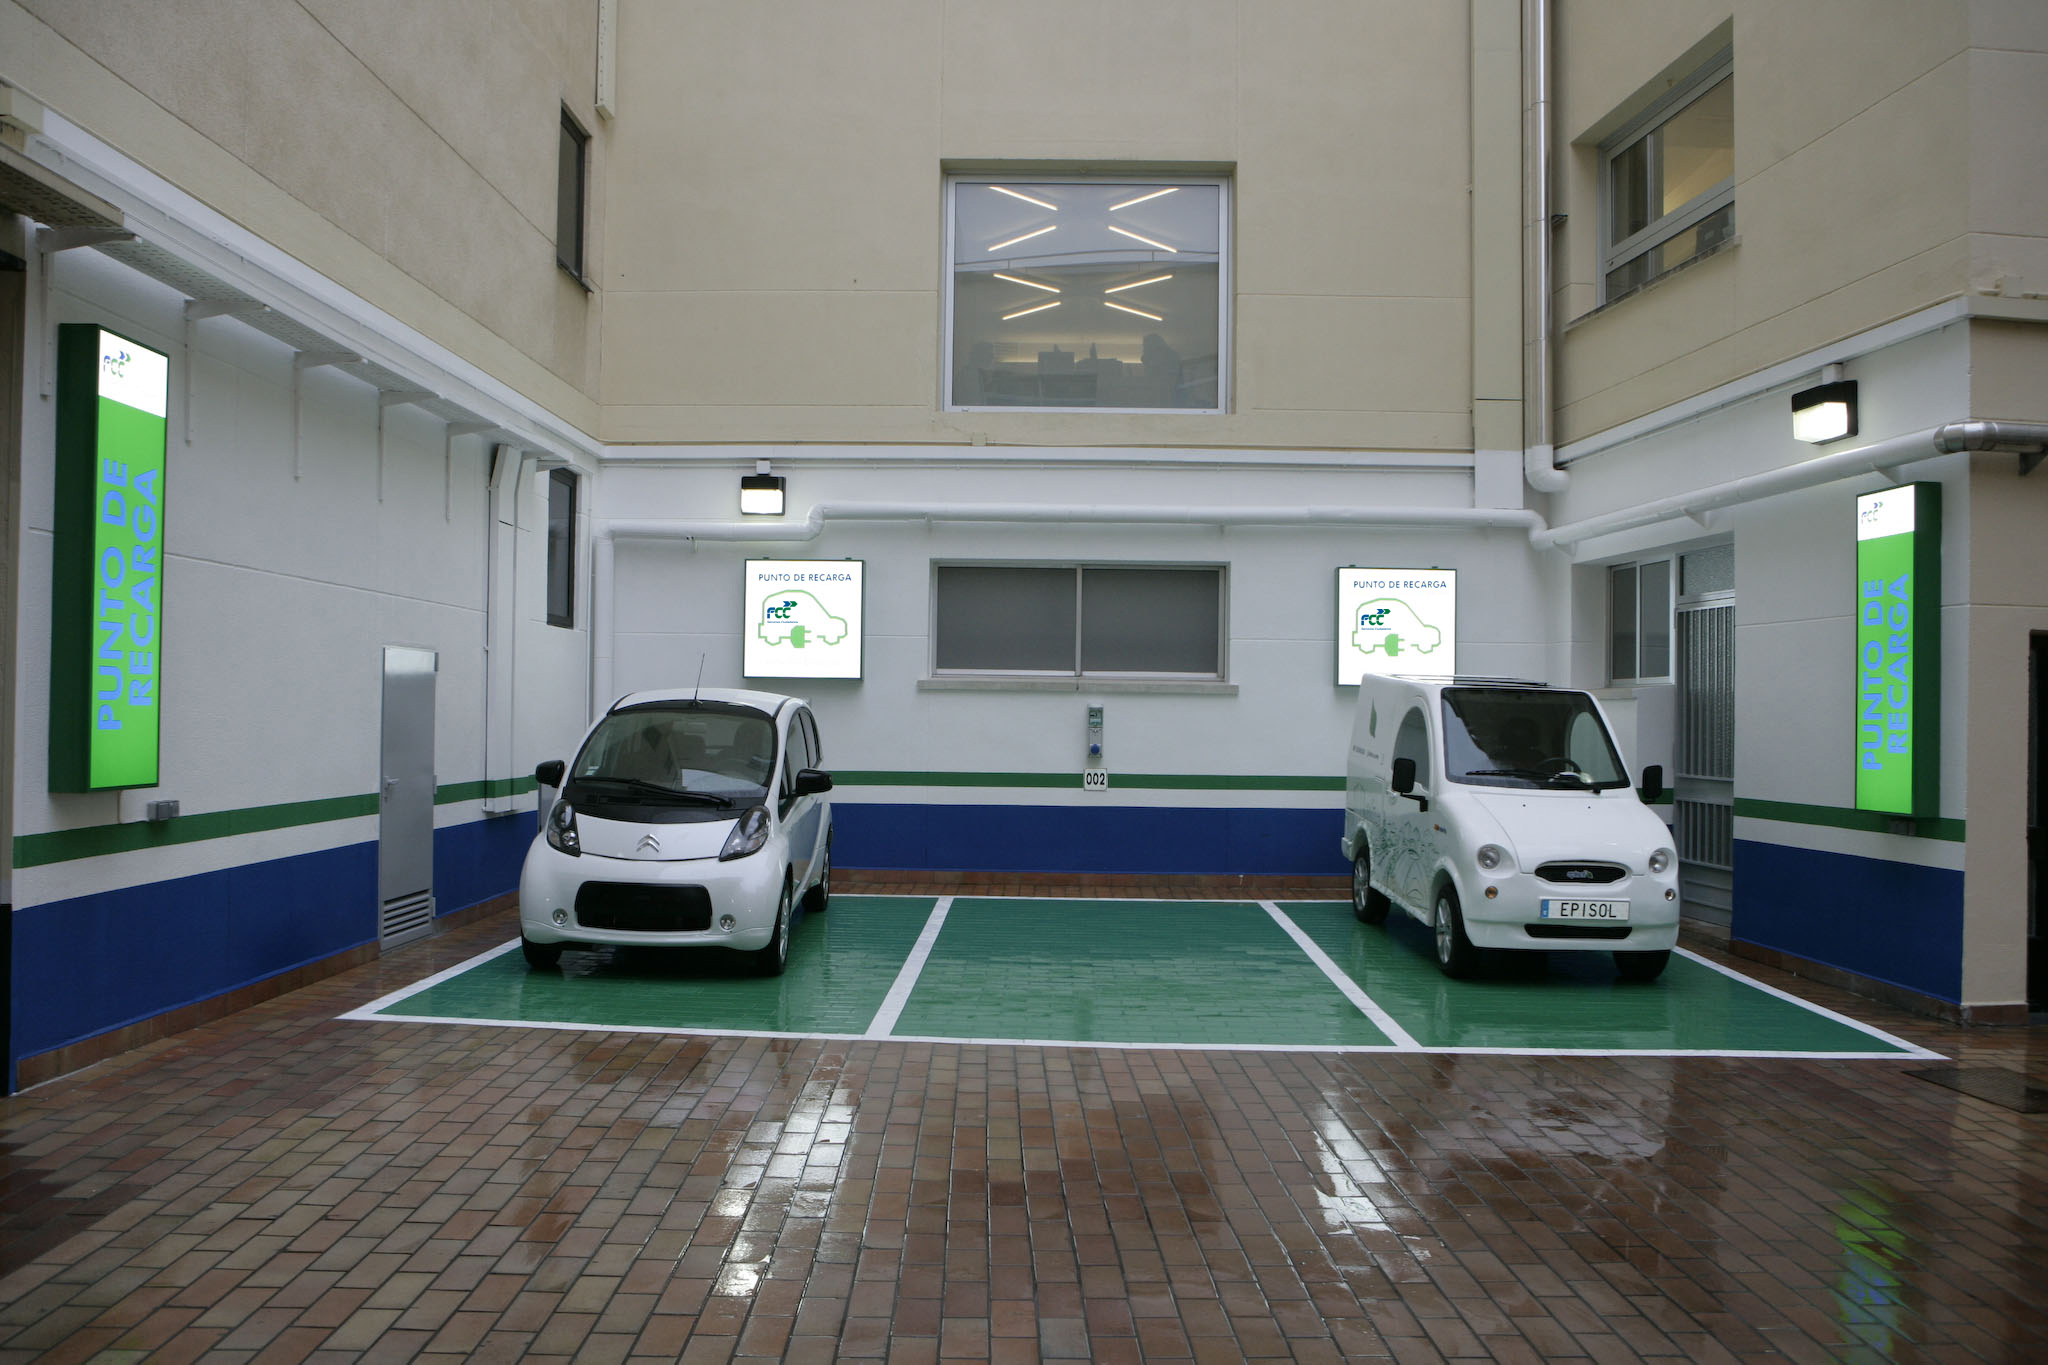 Plazas de aparcamiento con puntos para recarga de vehículos eléctricos